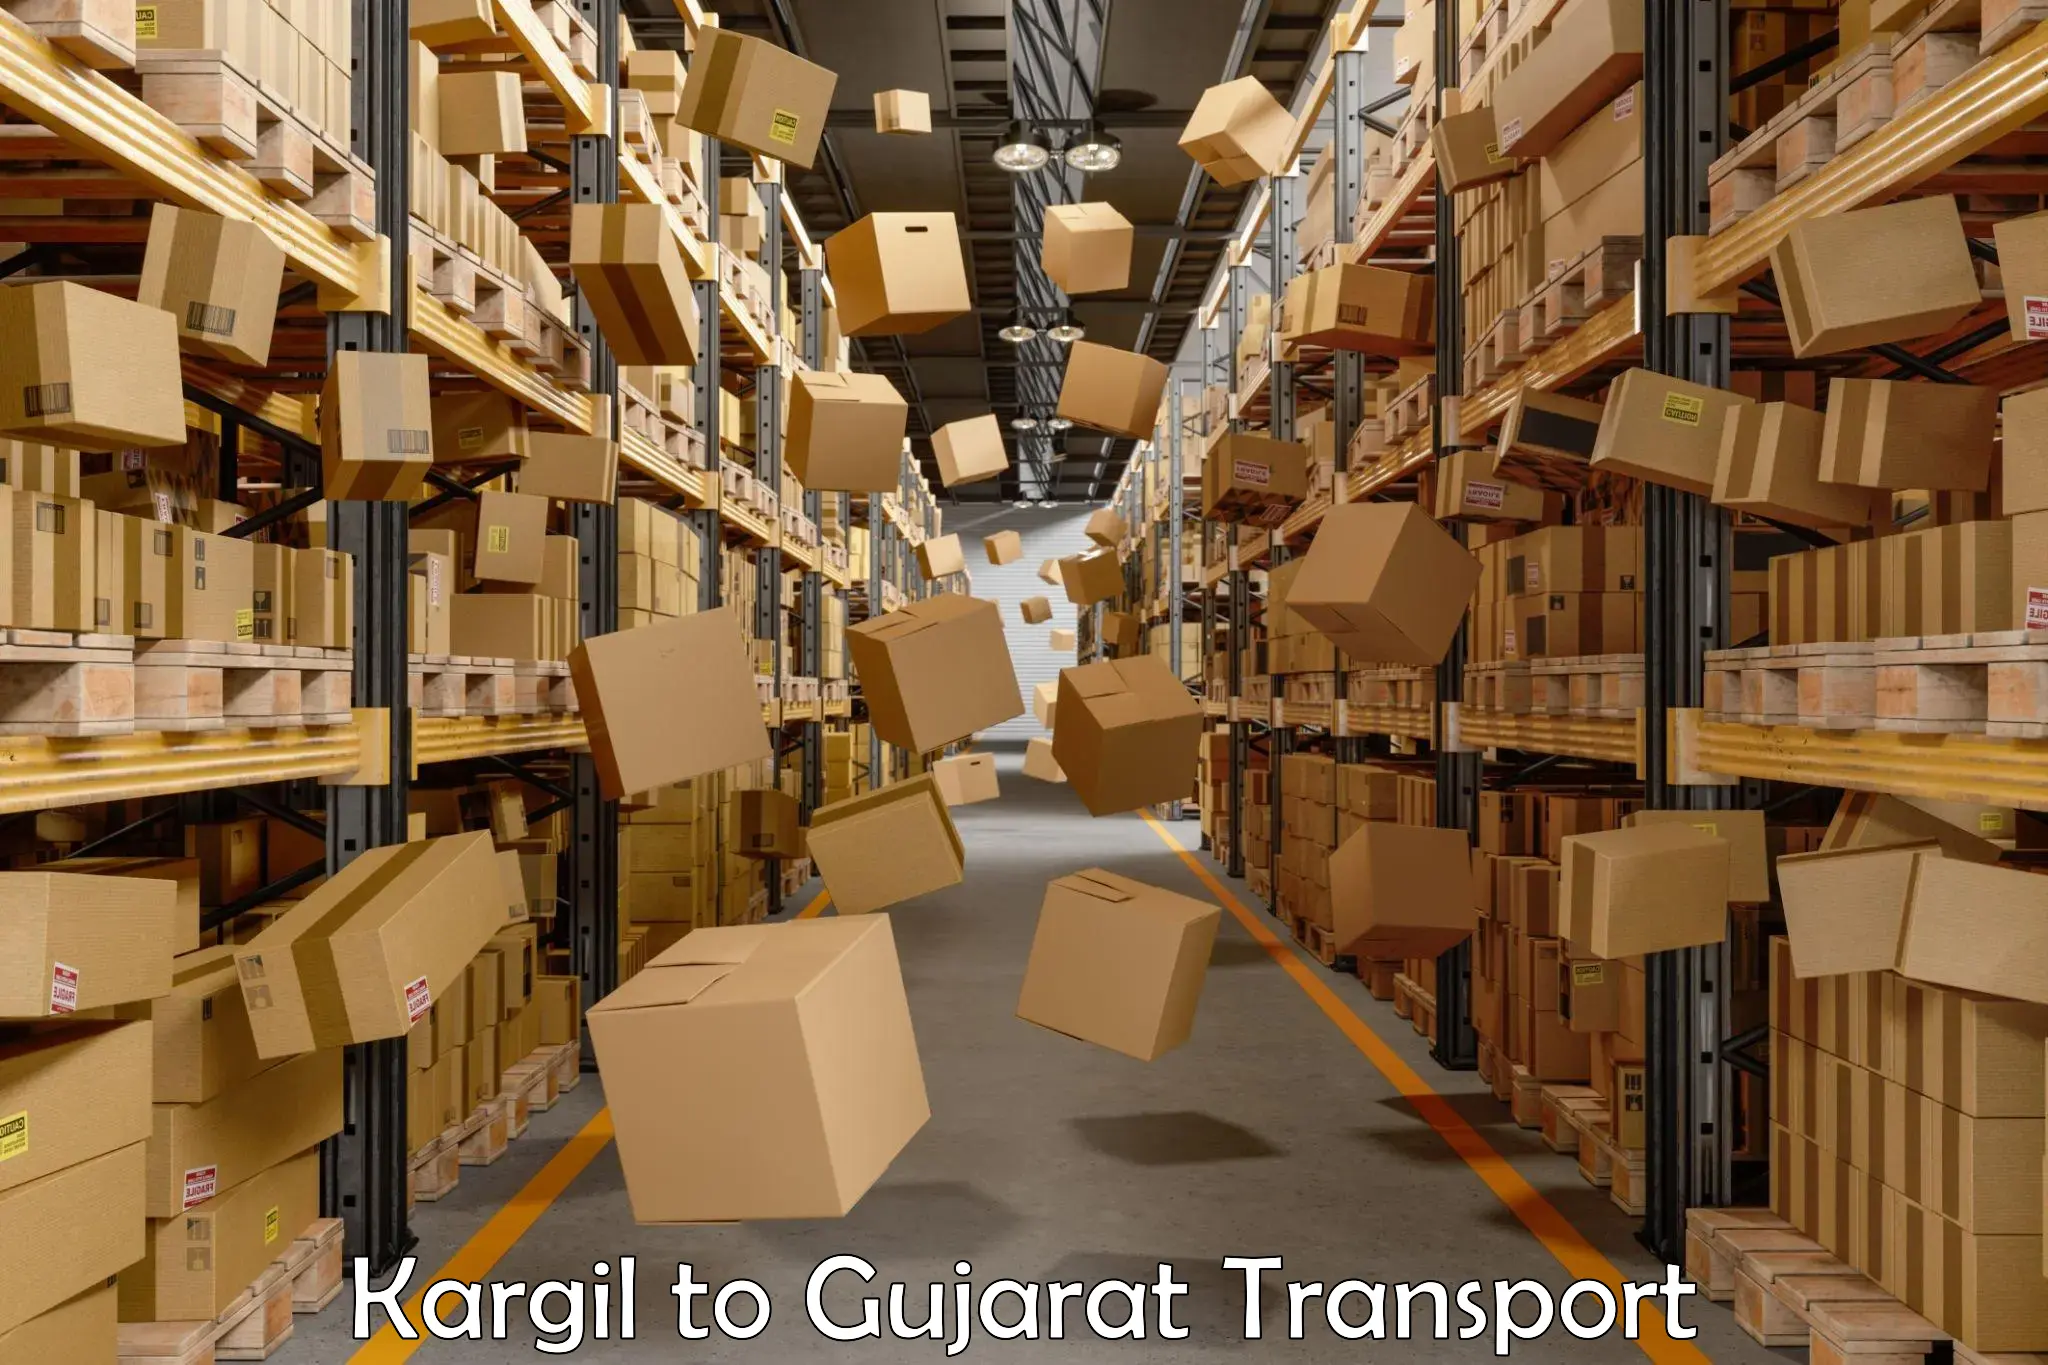 Online transport service Kargil to Gujarat